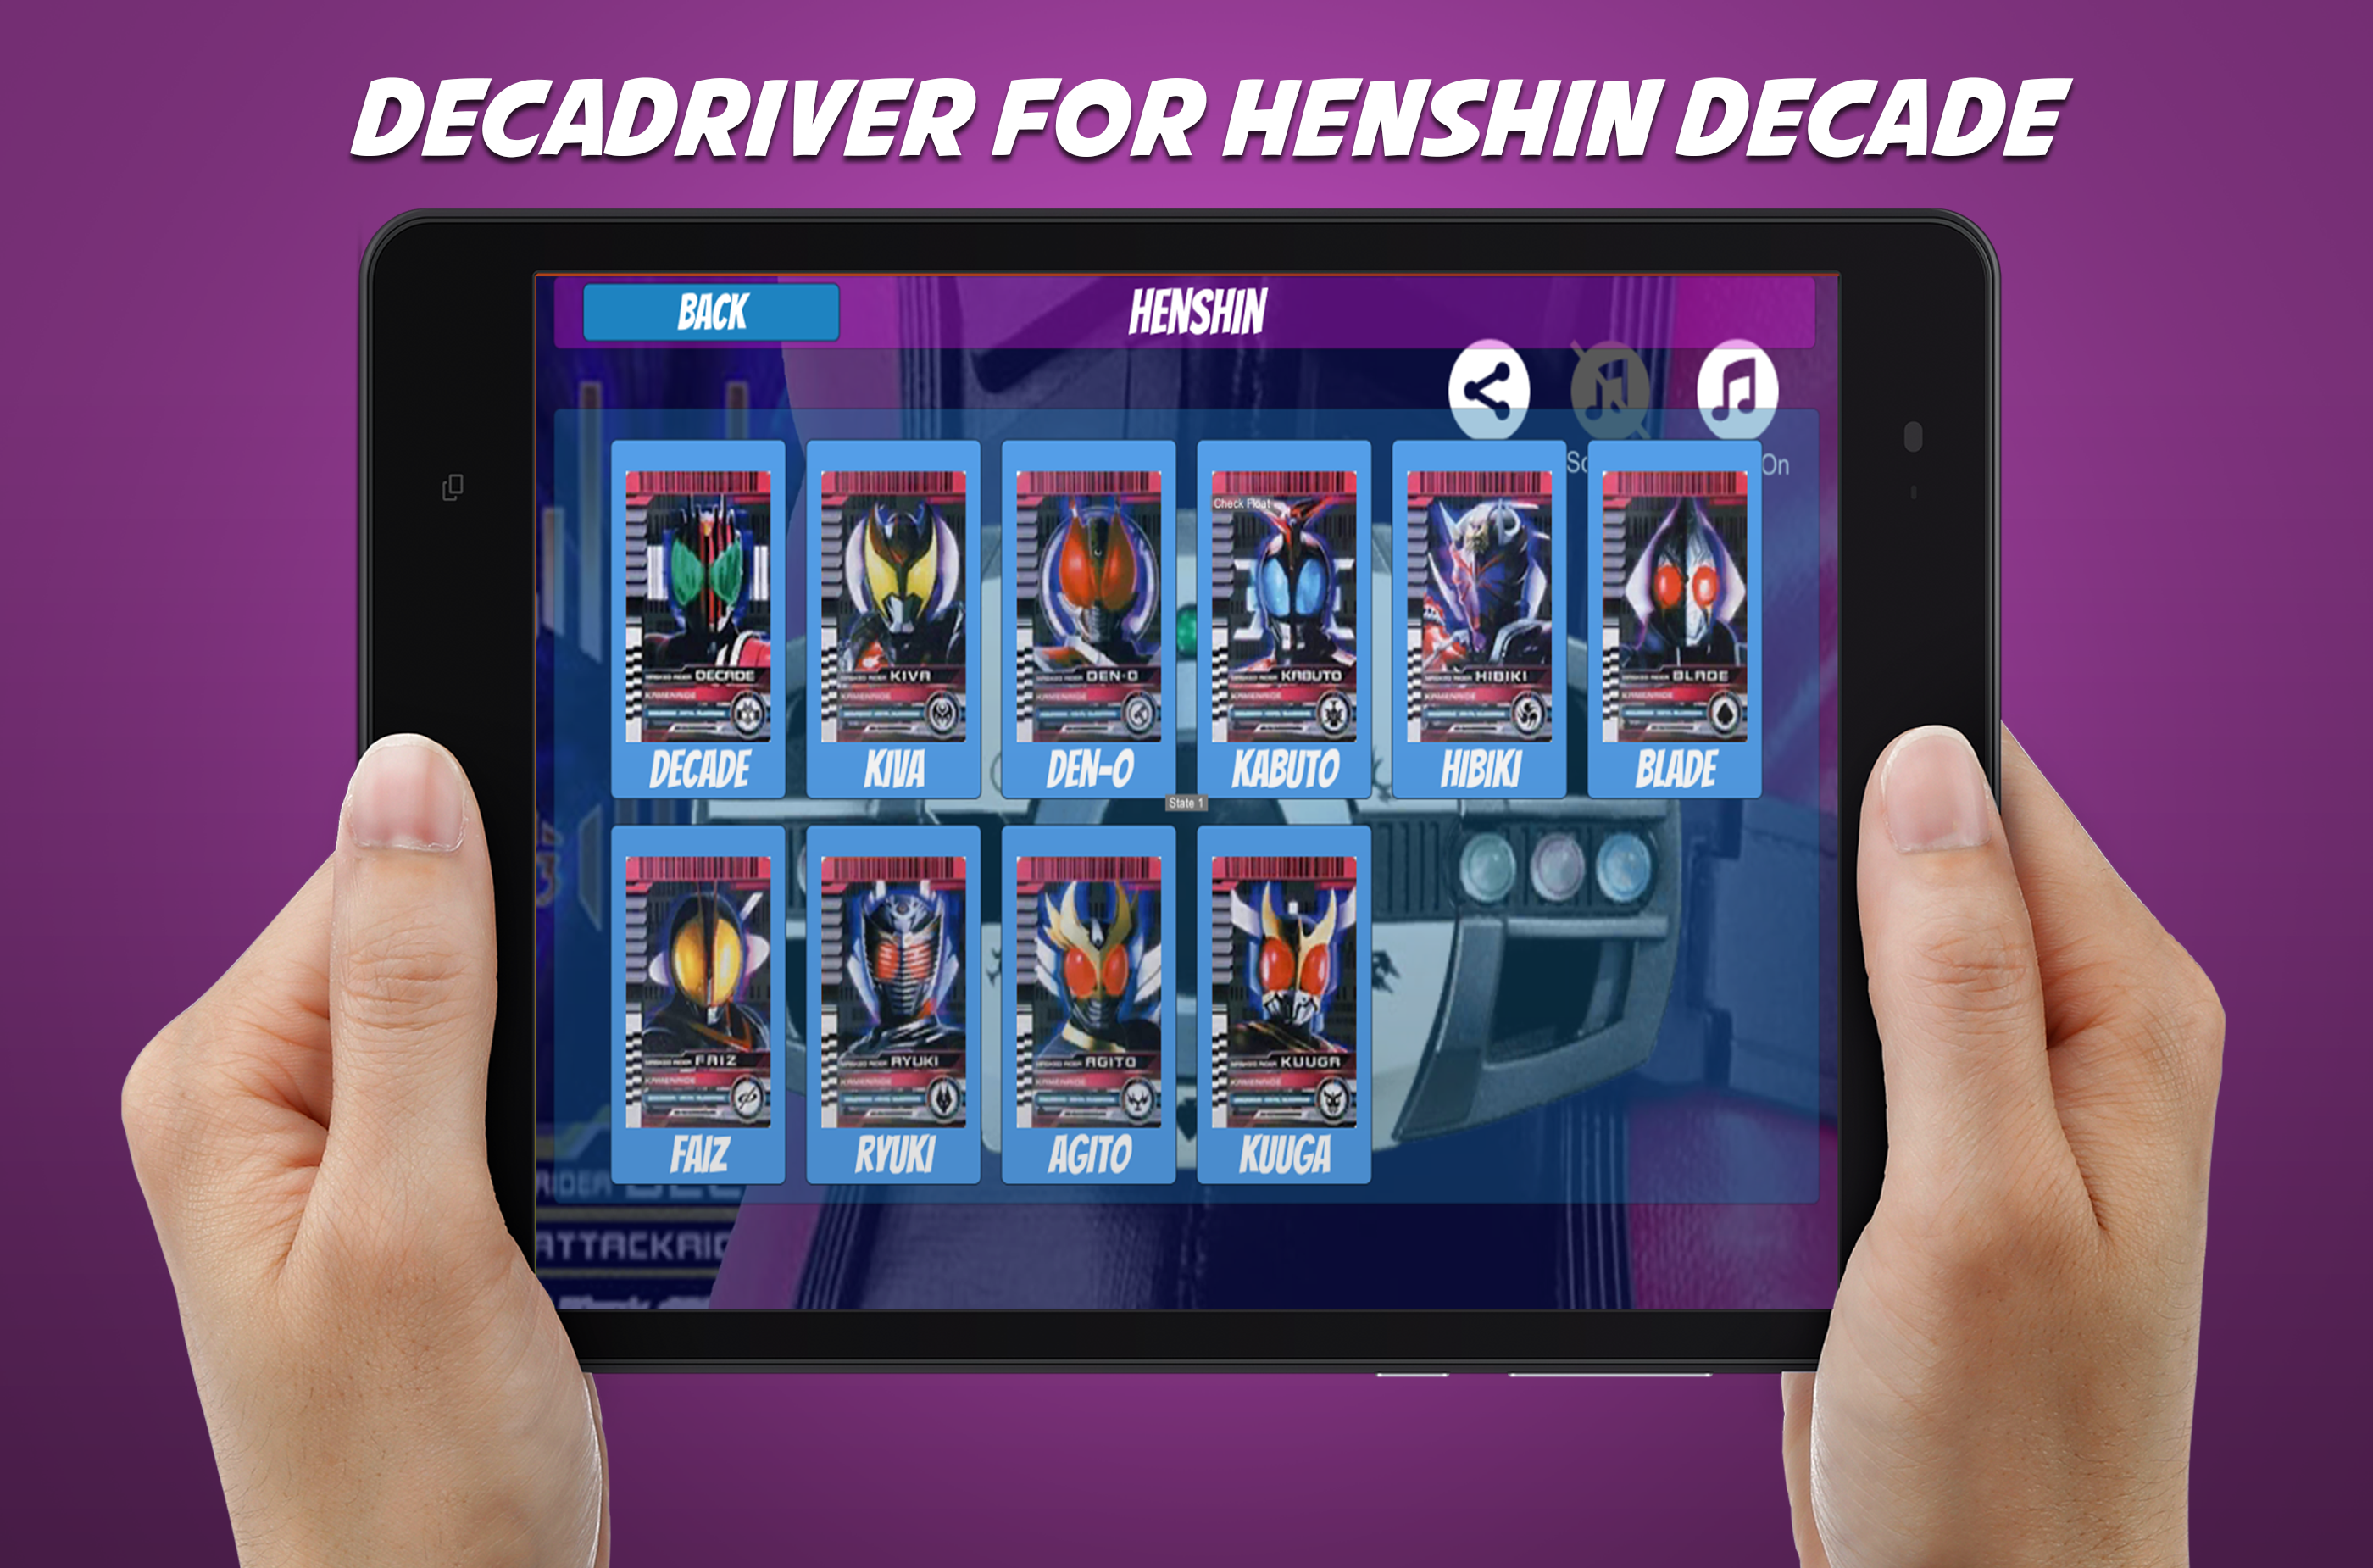 DX Henshin belt for decade henshinのキャプチャ